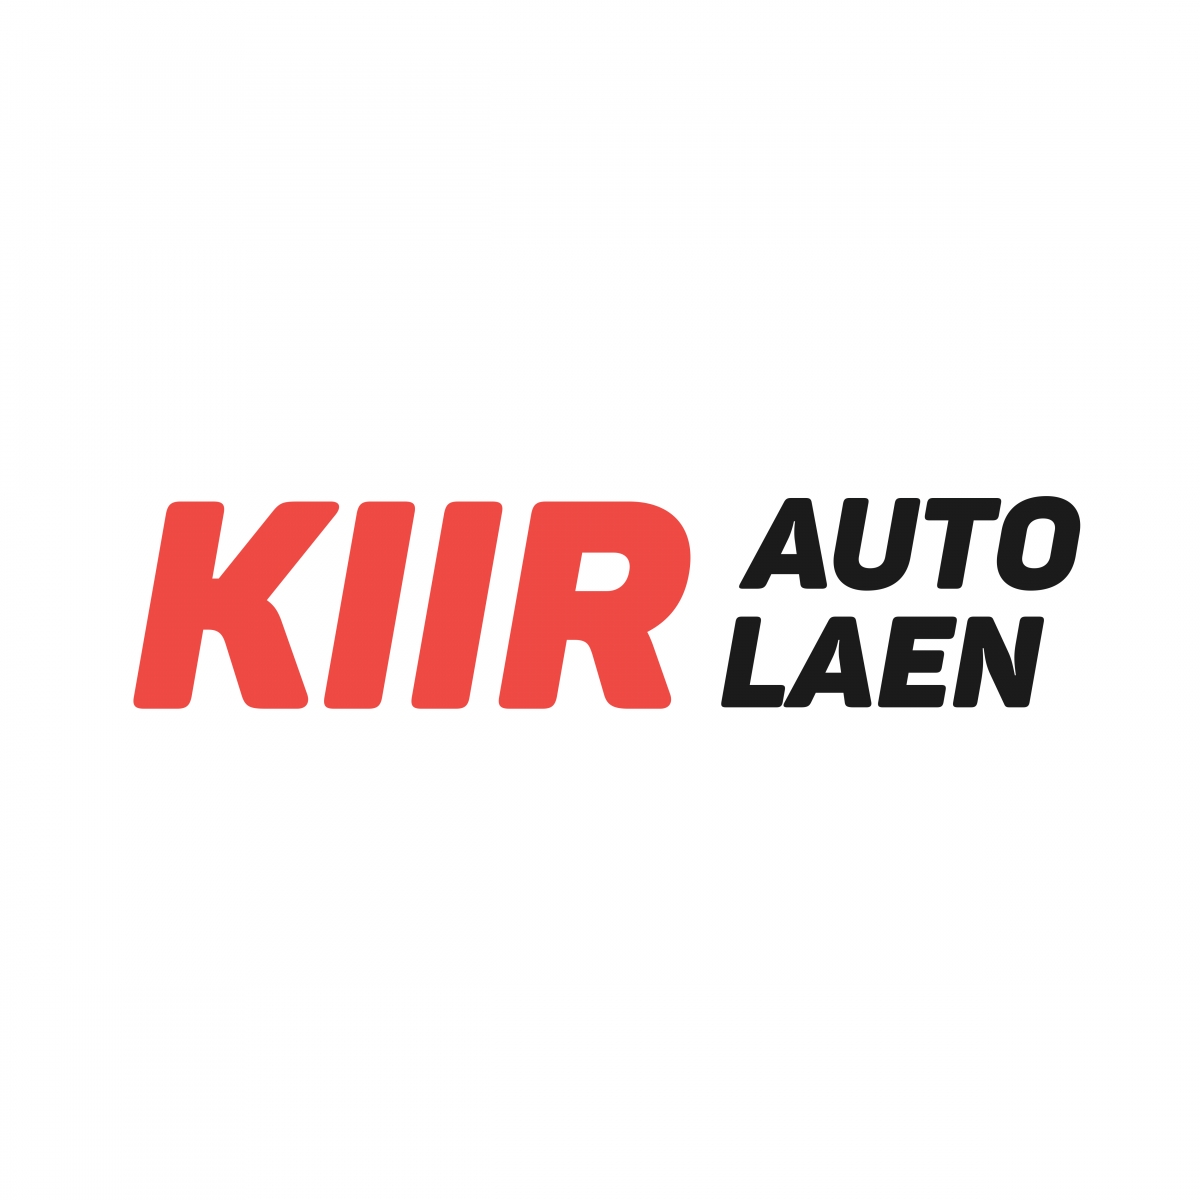 kiirautolaen-logo-5000x5000px-text